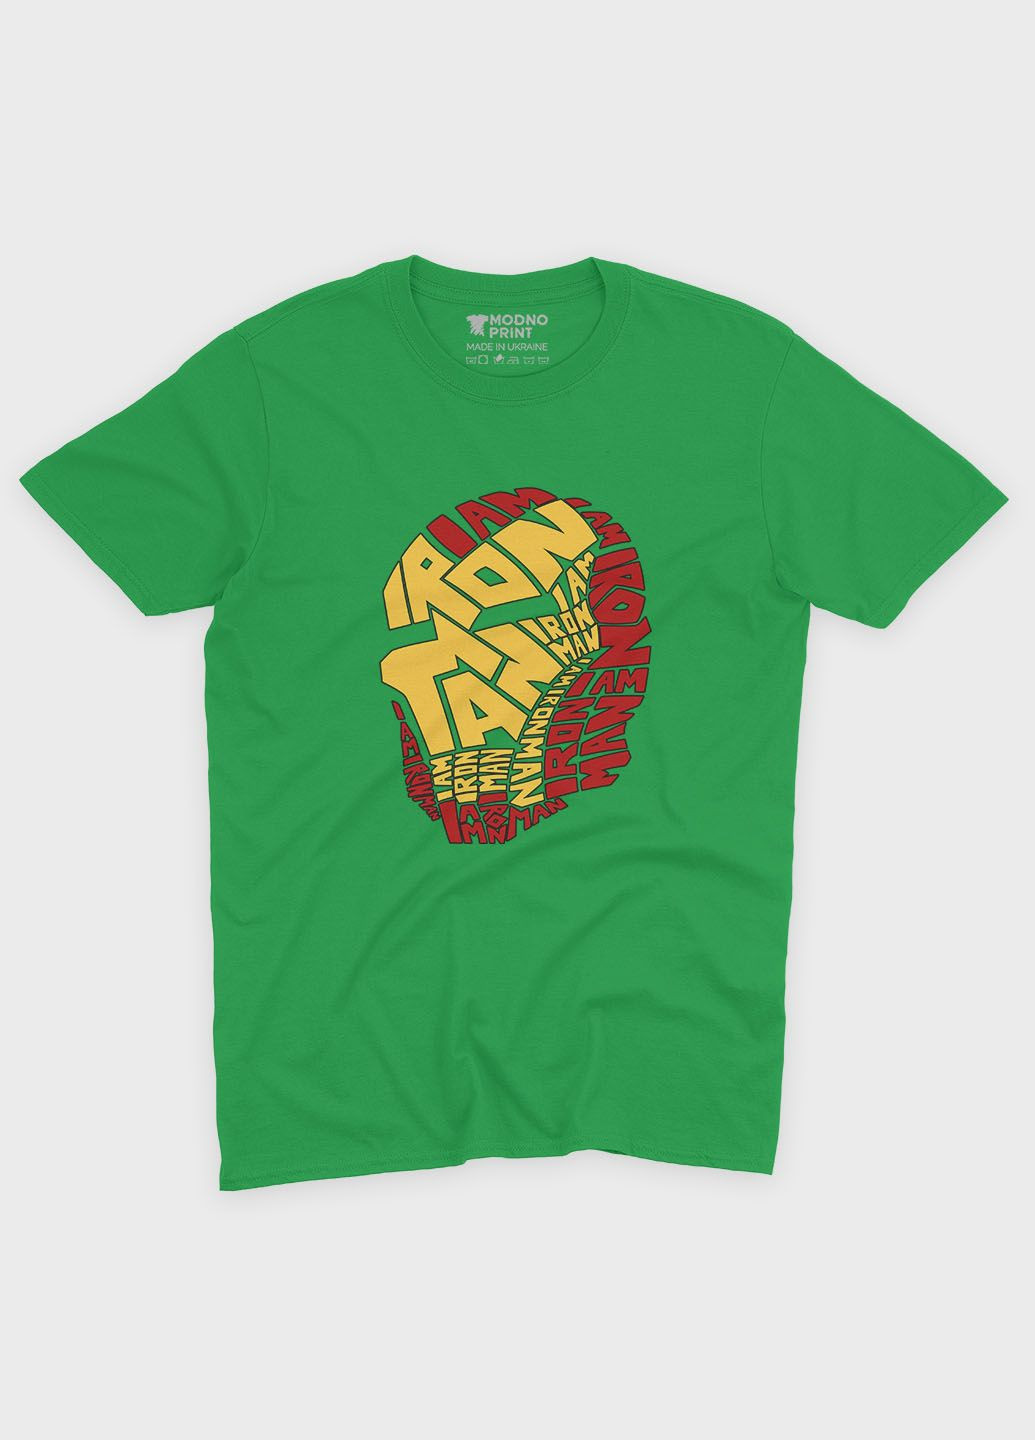 Зеленая демисезонная футболка для мальчика с принтом супергероя - железный человек (ts001-1-keg-006-016-001-b) Modno